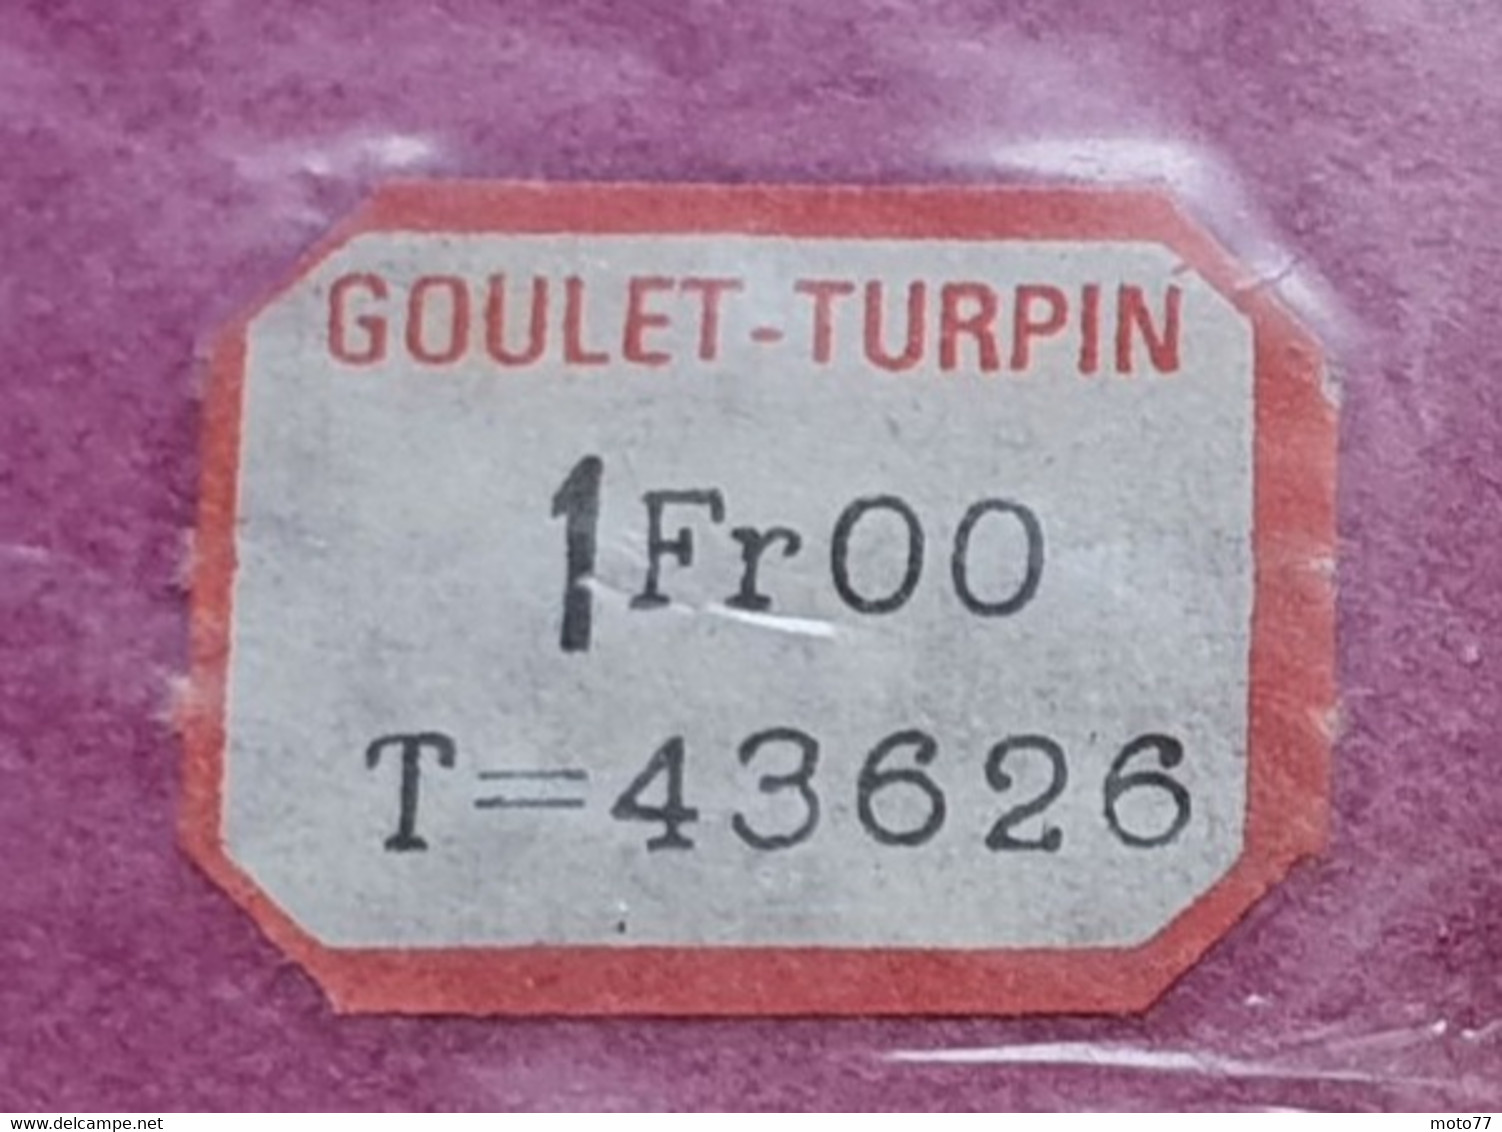 Ancien NAPPERON rond - environ diamètre 30 cm - Plastique - "neuf de stock" magasin GOULET TURPIN Reims - vers 1960